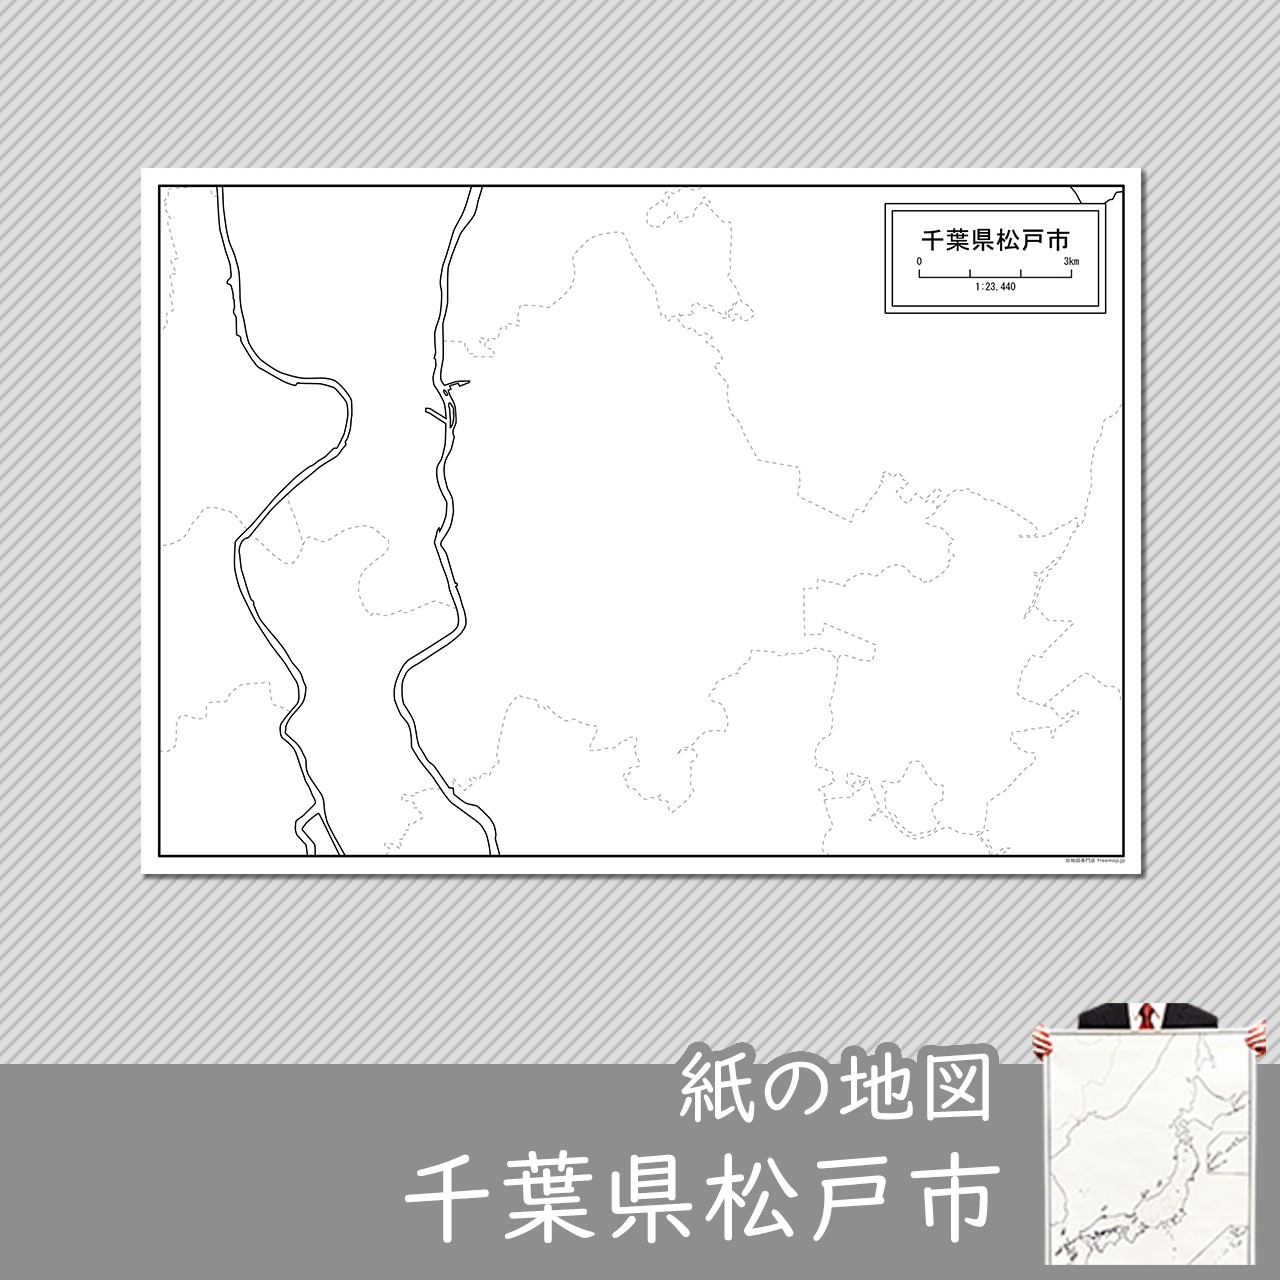 松戸市の紙の白地図のサムネイル